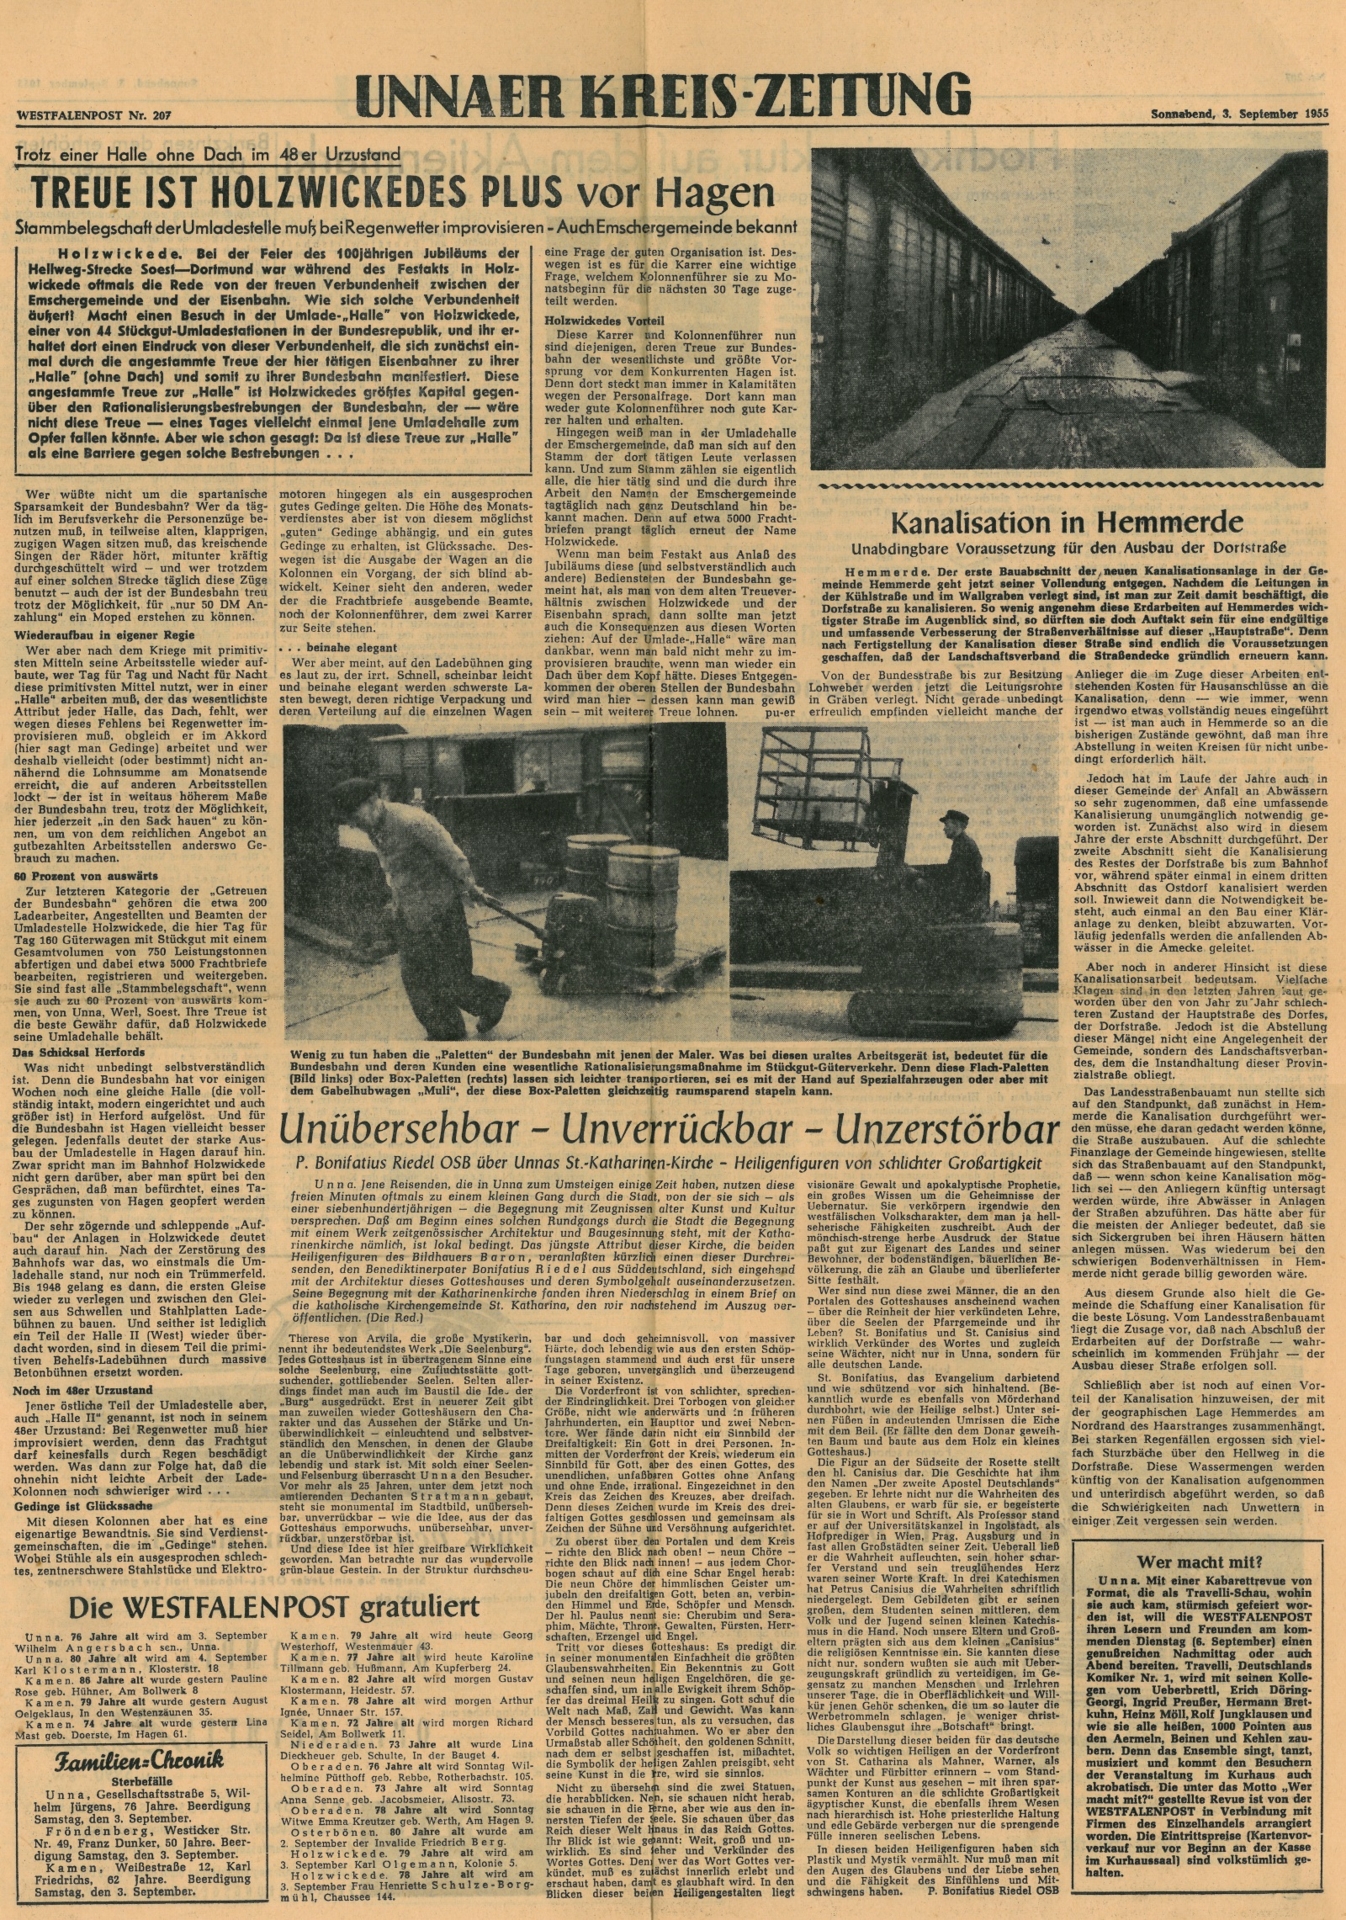 Bericht aus der Westfalenpost vom 02. September 1955